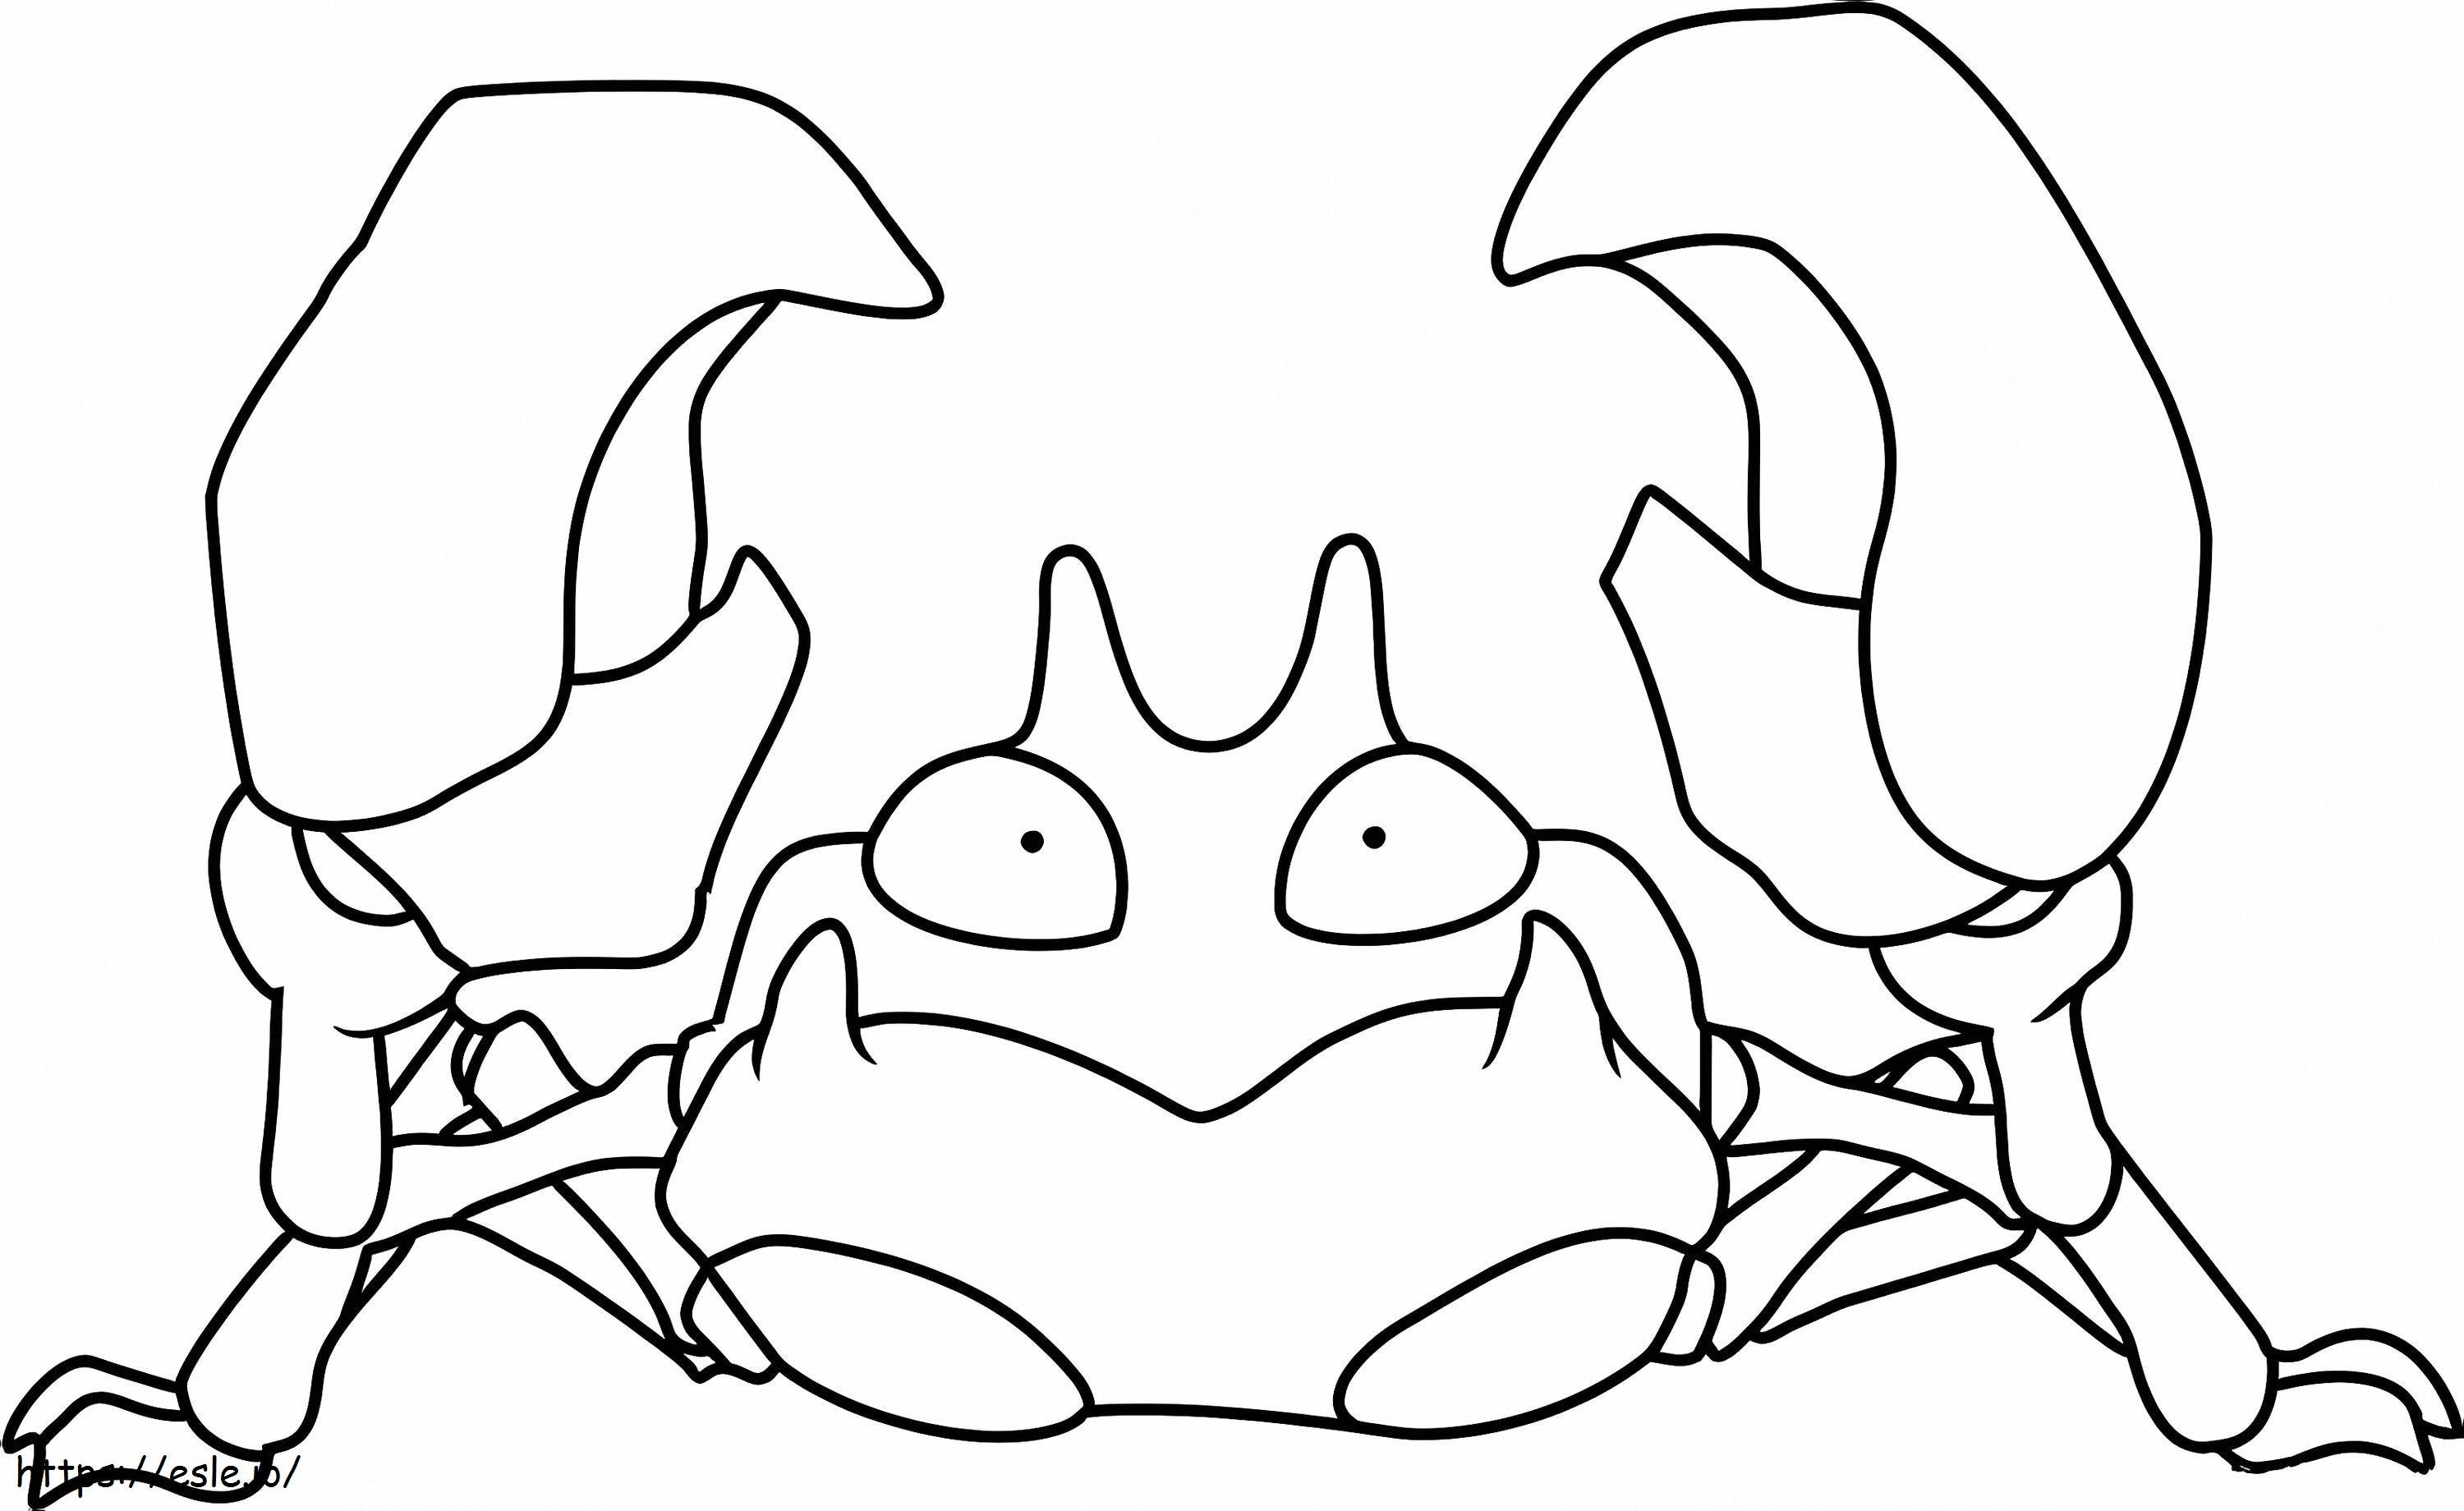 Krabby 2 ausmalbilder